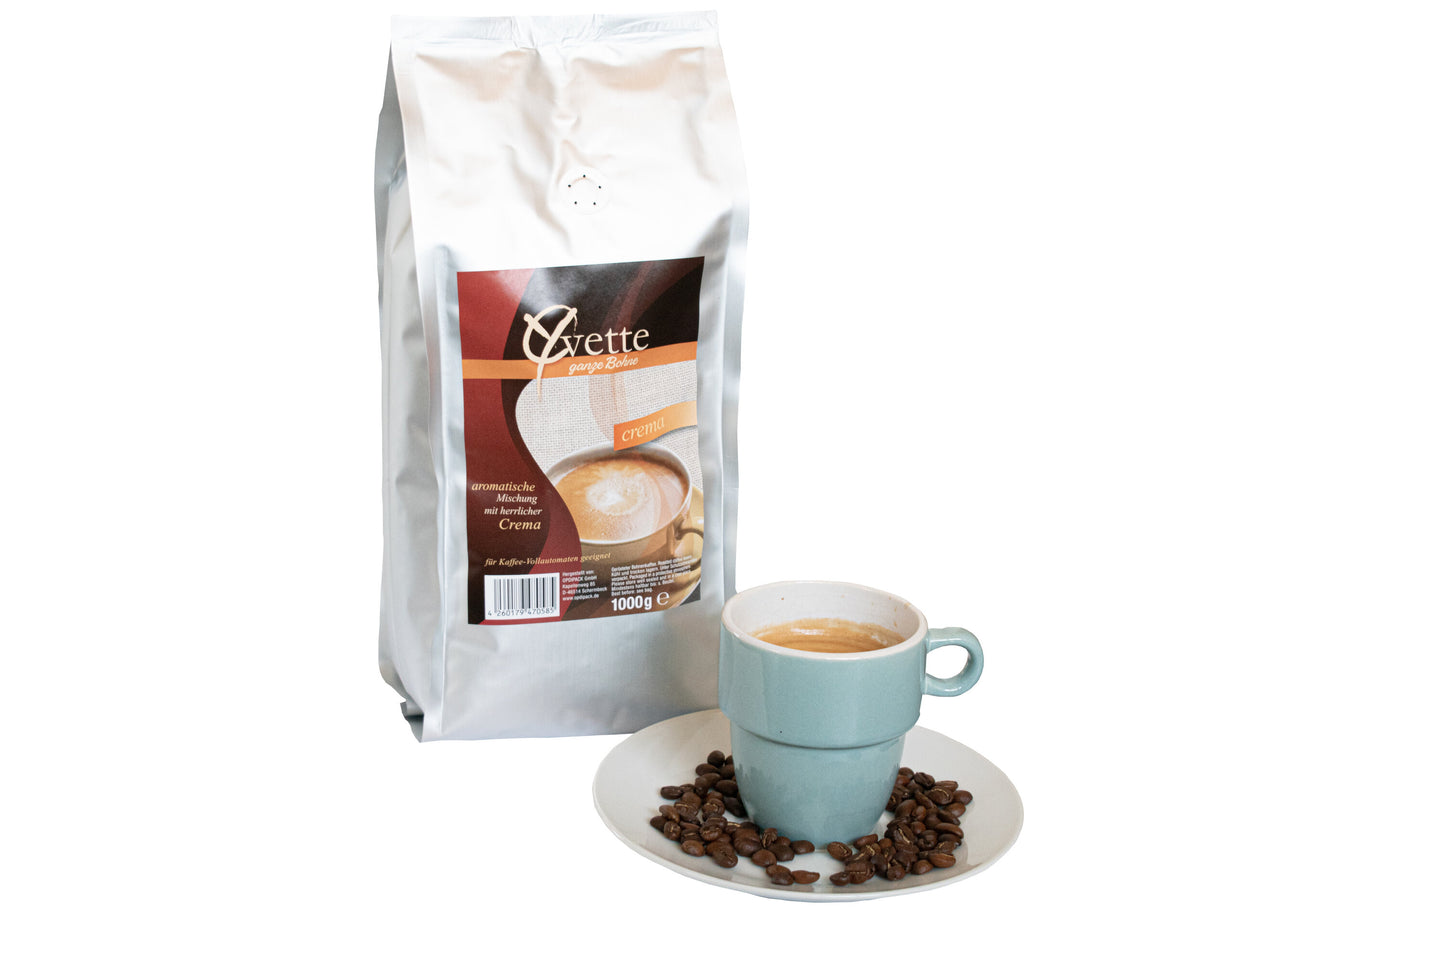 Ein silberner Beutel mit 1000g frisch gerösteten Crema-Kaffeebohnen der Marke Yvette Kaffee. Der Beutel zeigt das Logo der Marke und die Produktbezeichnung. Vor dem Beutel ist ein Teller mit Kaffeebohnen und auf dem Teller Kaffee Tasse, die ein Gefühl von Frische und Qualität vermitteln.